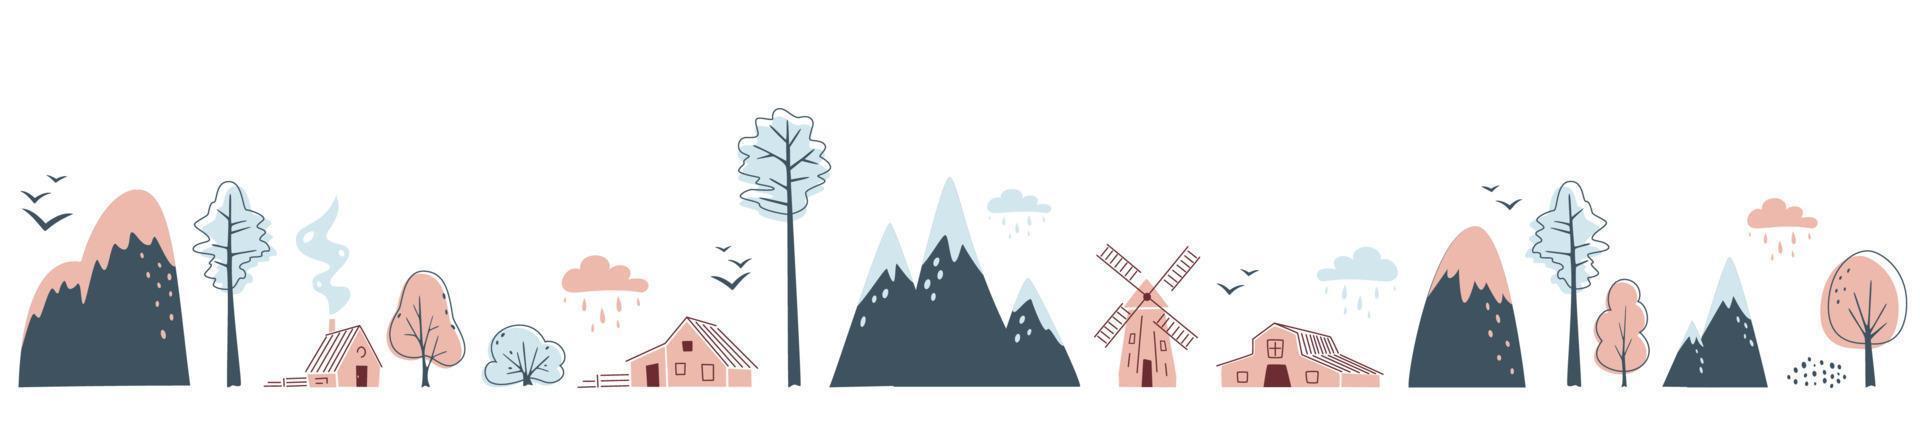 minimalistische naadloze grens met bergen, bomen, huizen en windmolen op witte achtergrond. landschap in beperkte kleuren. vector